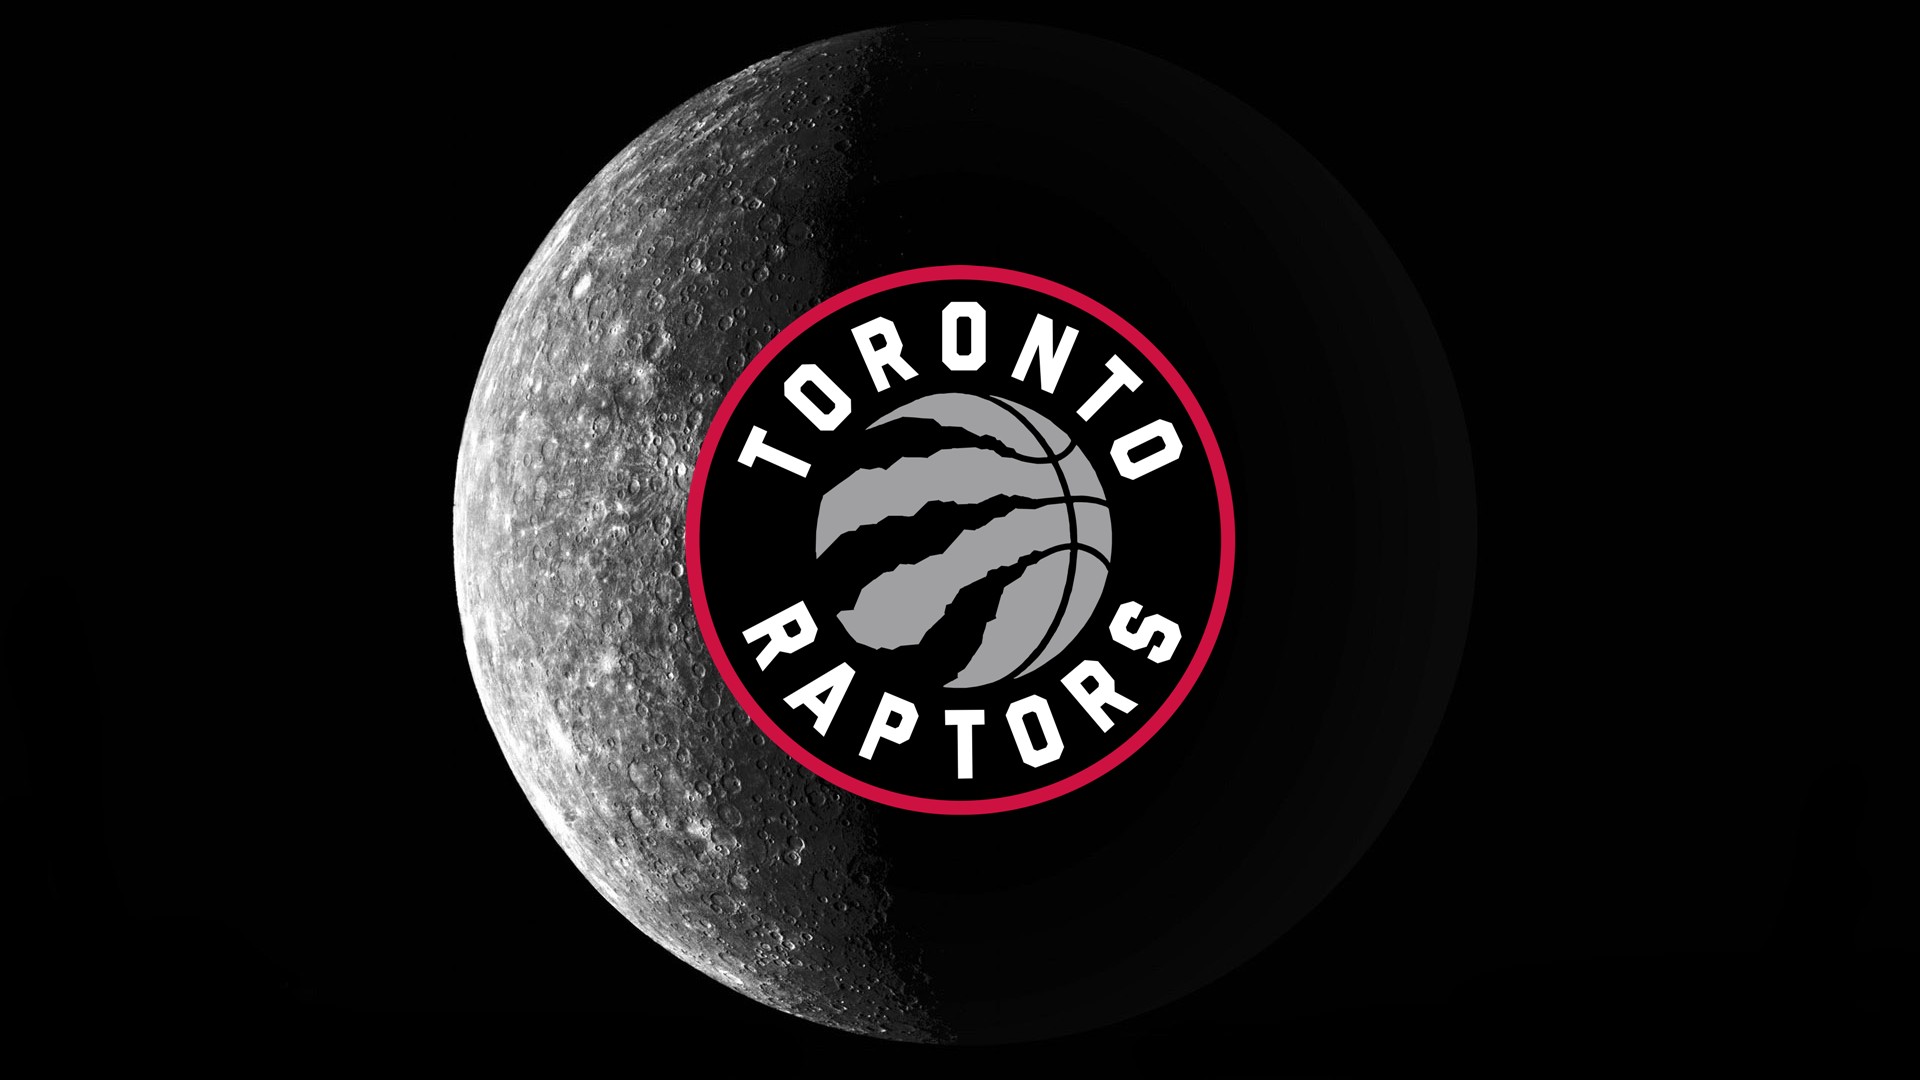 Скачать обои бесплатно Баскетбол, Нба, Виды Спорта, Лого, Торонто Рэпторс картинка на рабочий стол ПК